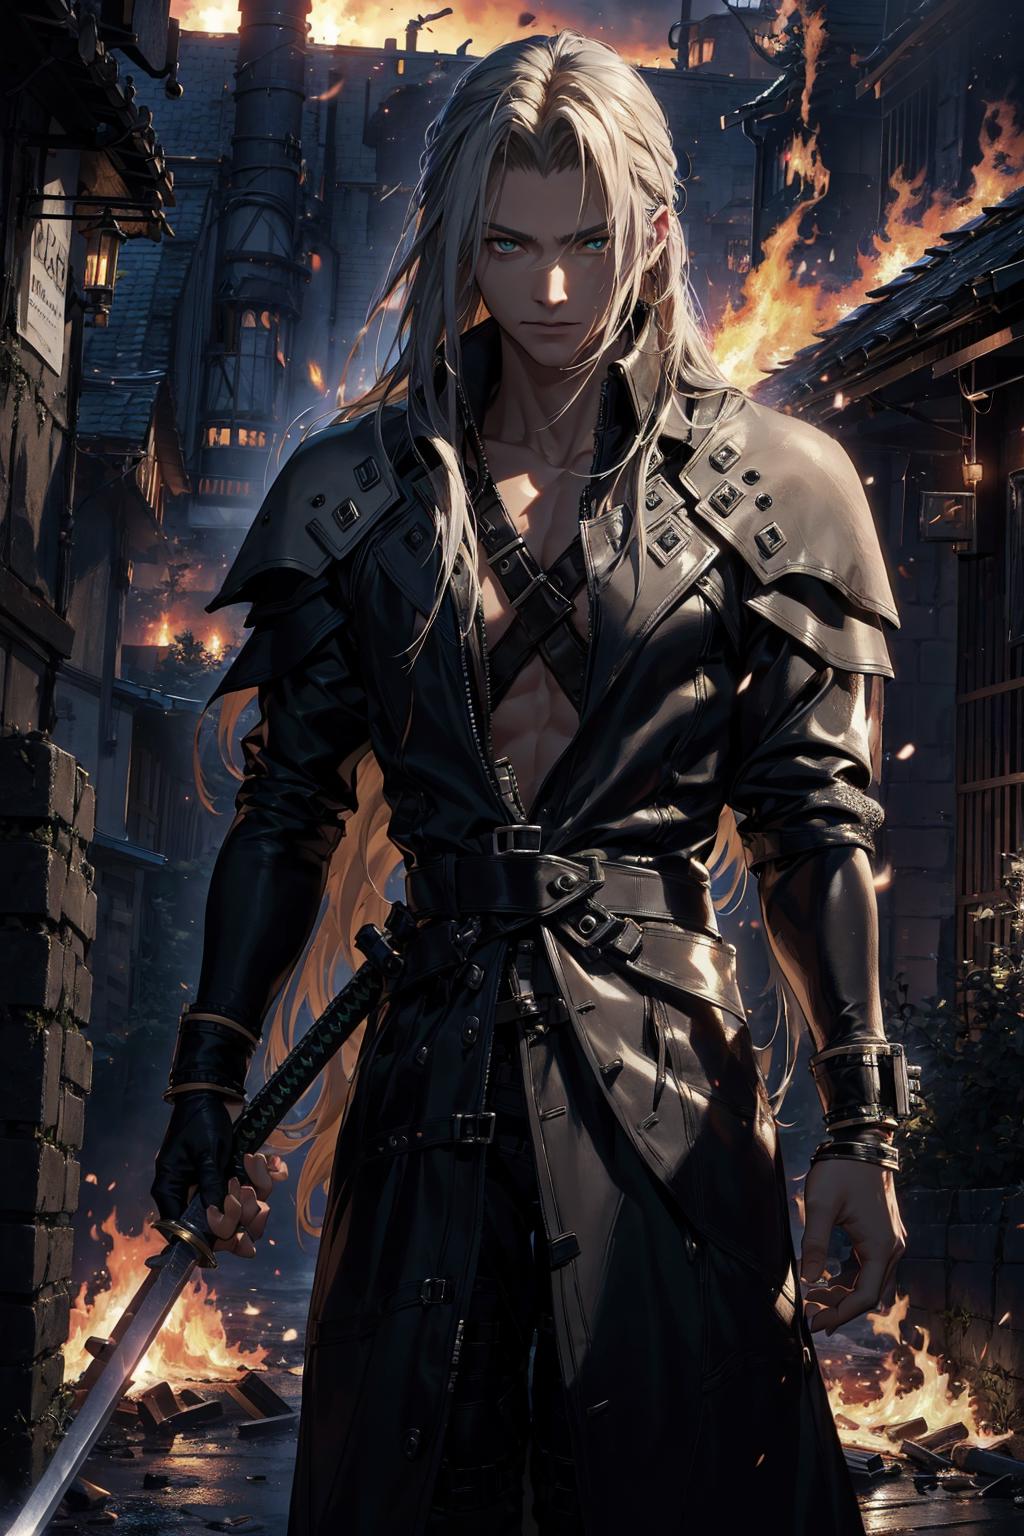 Sephiroth (Final Fantasy) image by barusu07